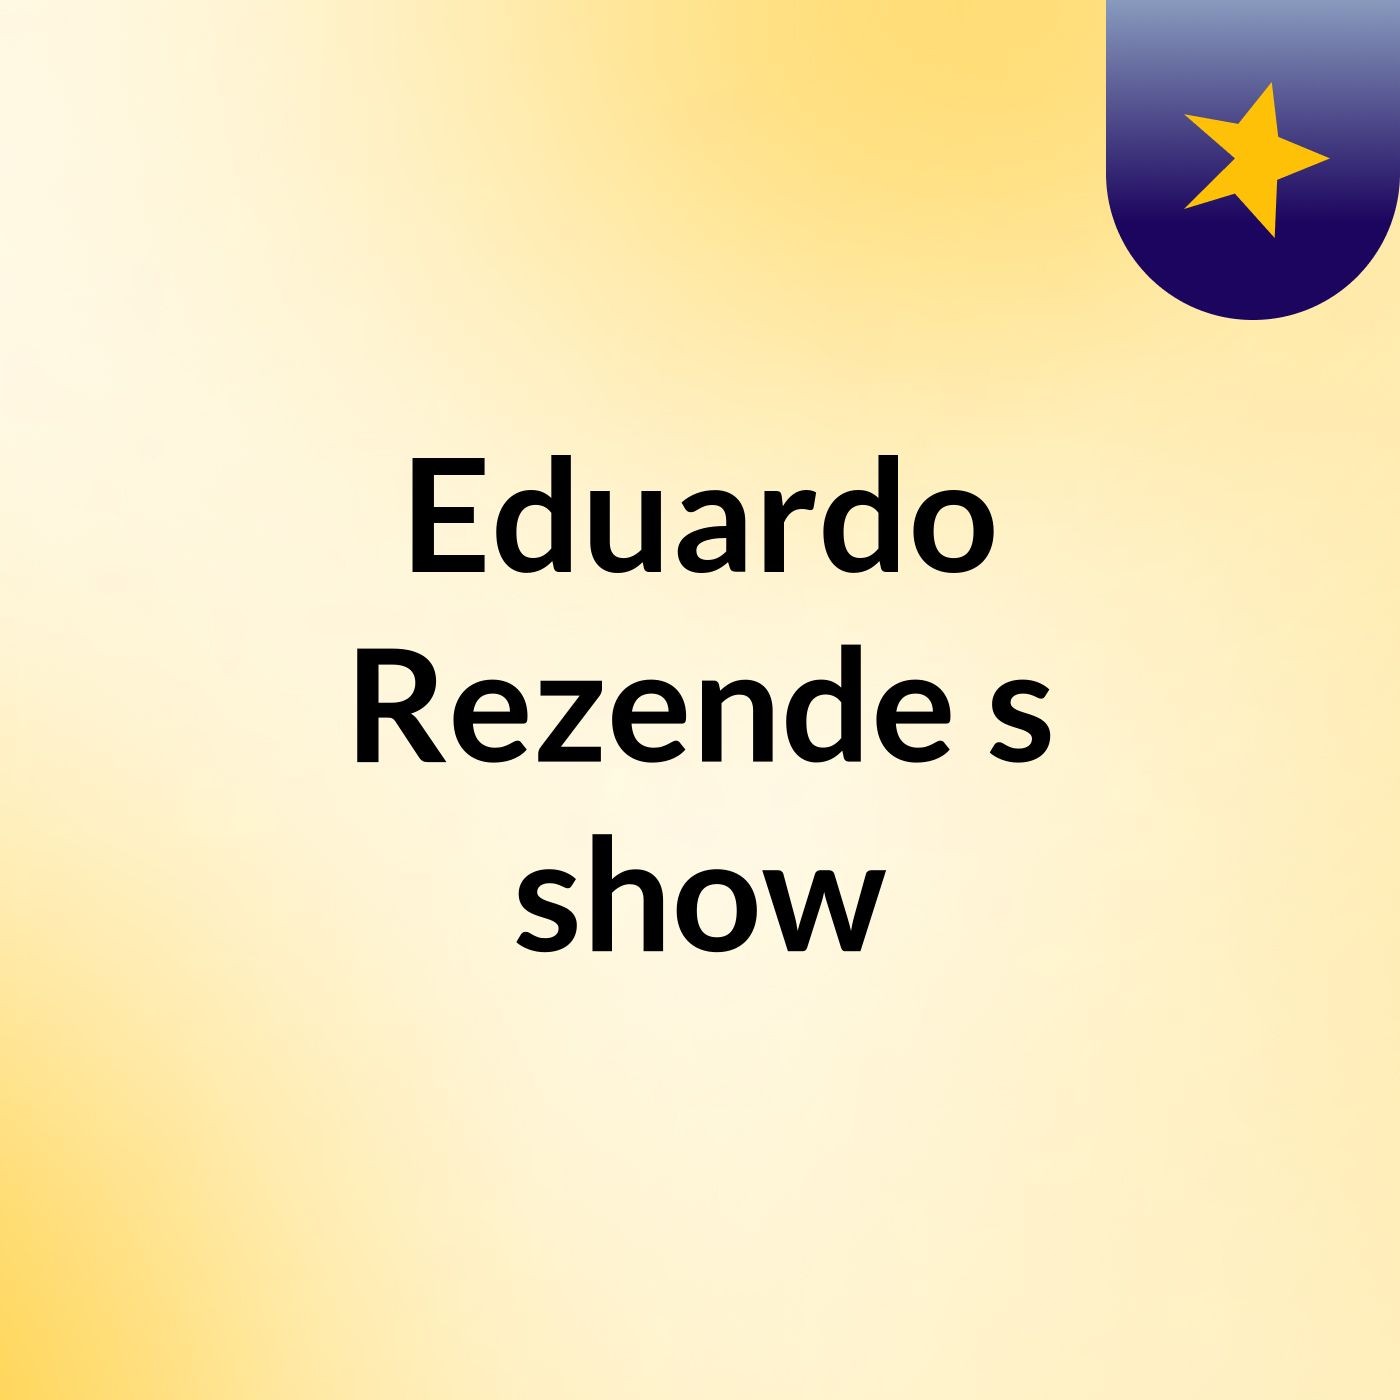 Eduardo Rezende's show